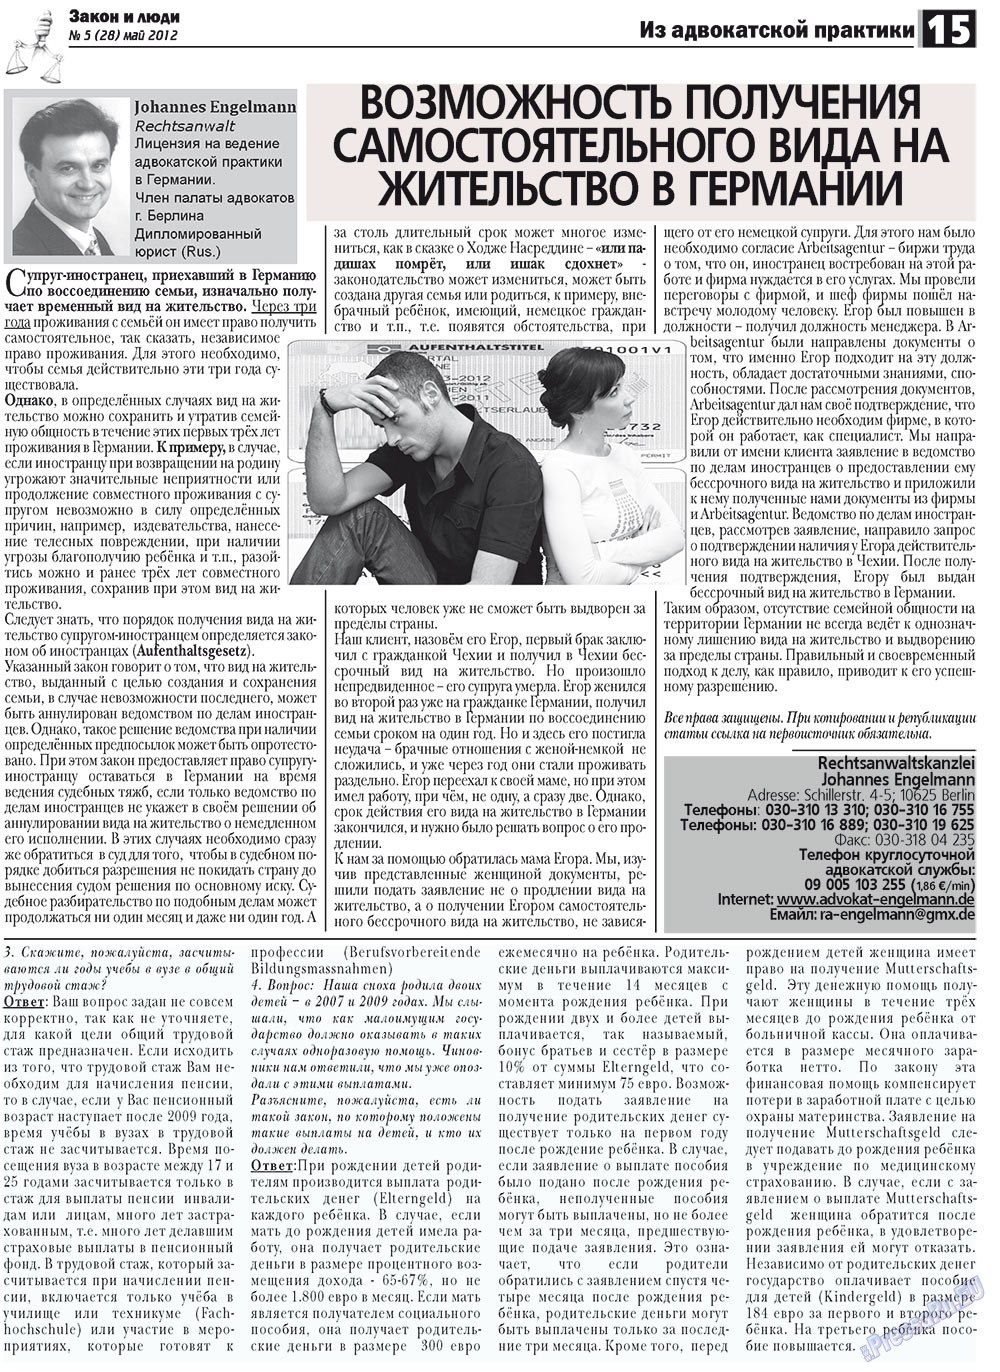 Закон и люди, газета. 2012 №5 стр.15